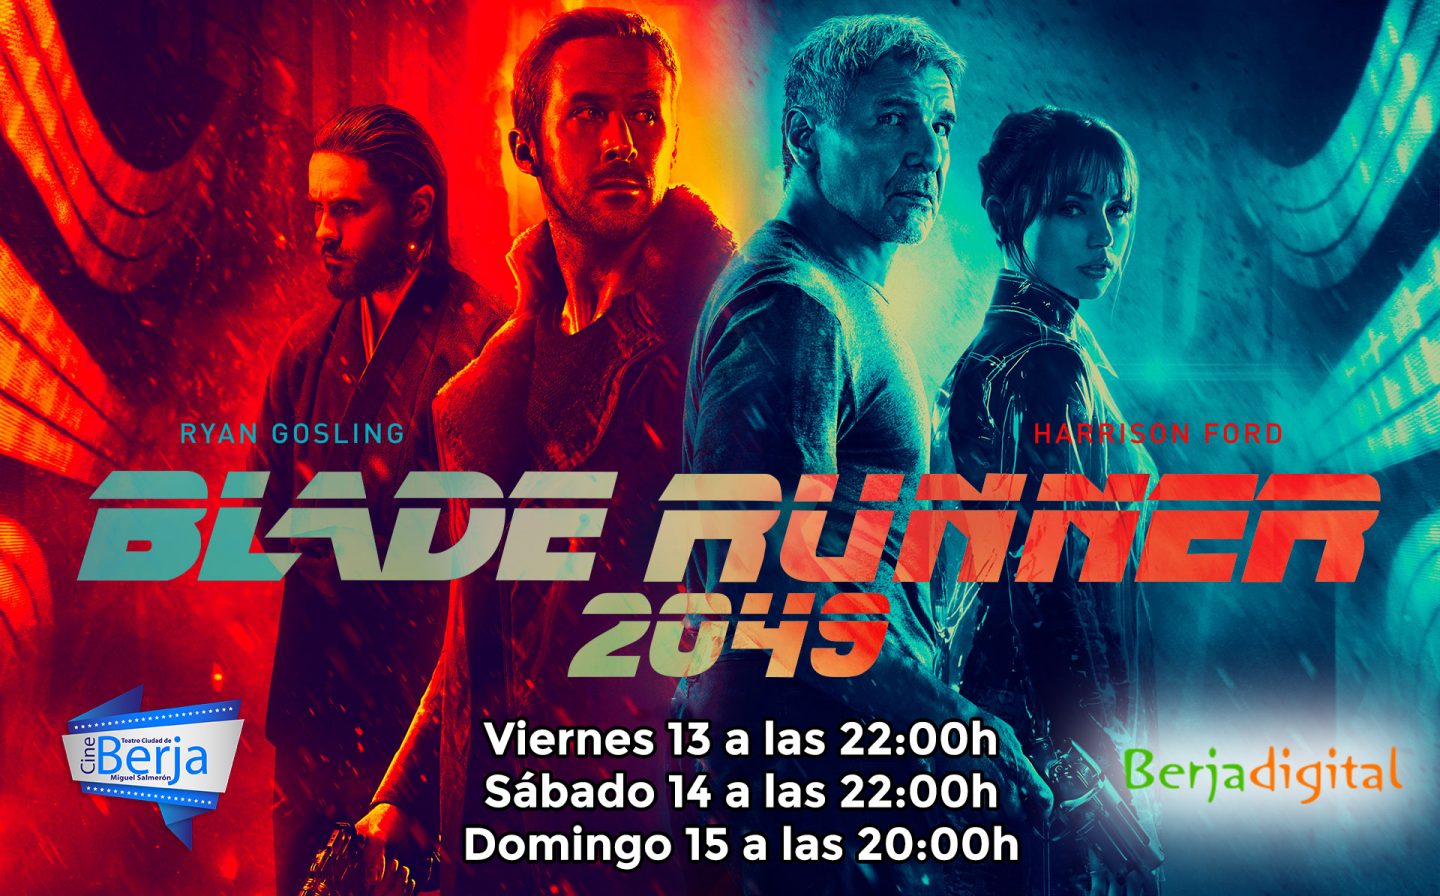 'Blade Runner 2049' se estrena este viernes en el Cine de Berja